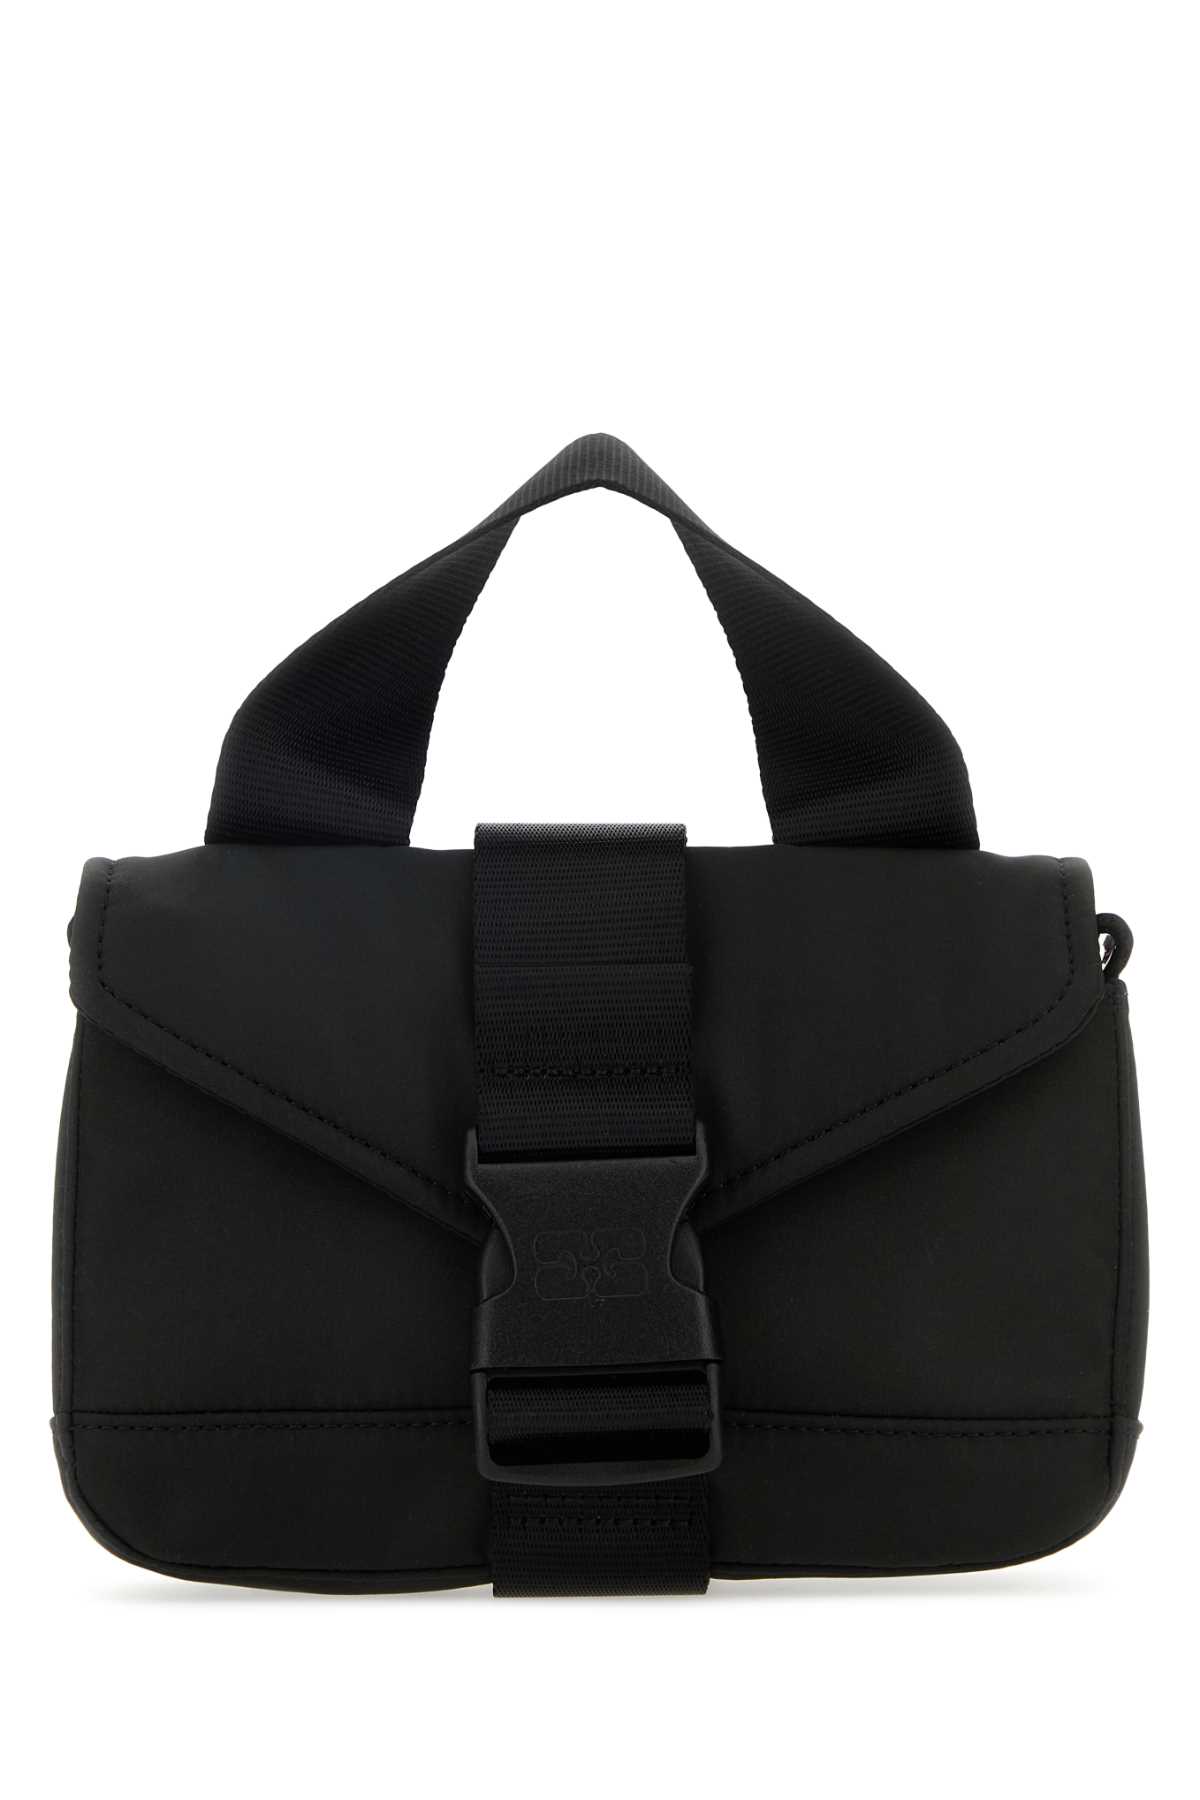 Ganni Black Fabric Mini Tech Handbag